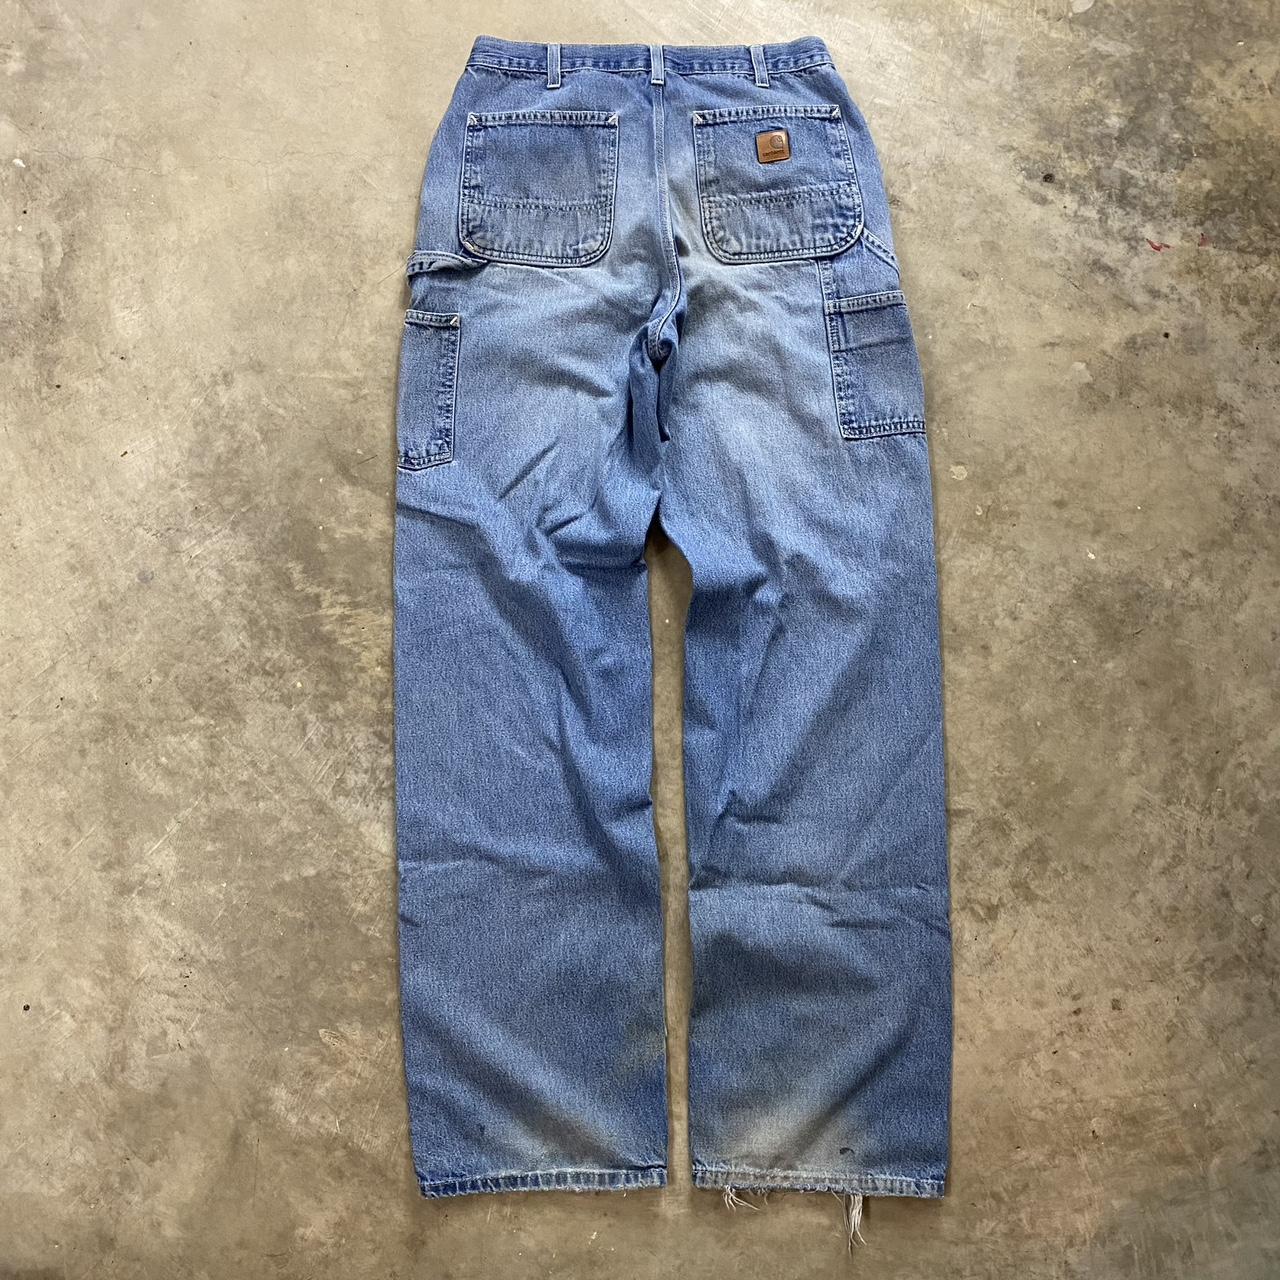 Vintage Carhartt Carpenter Jeans Vintage from the... - Depop